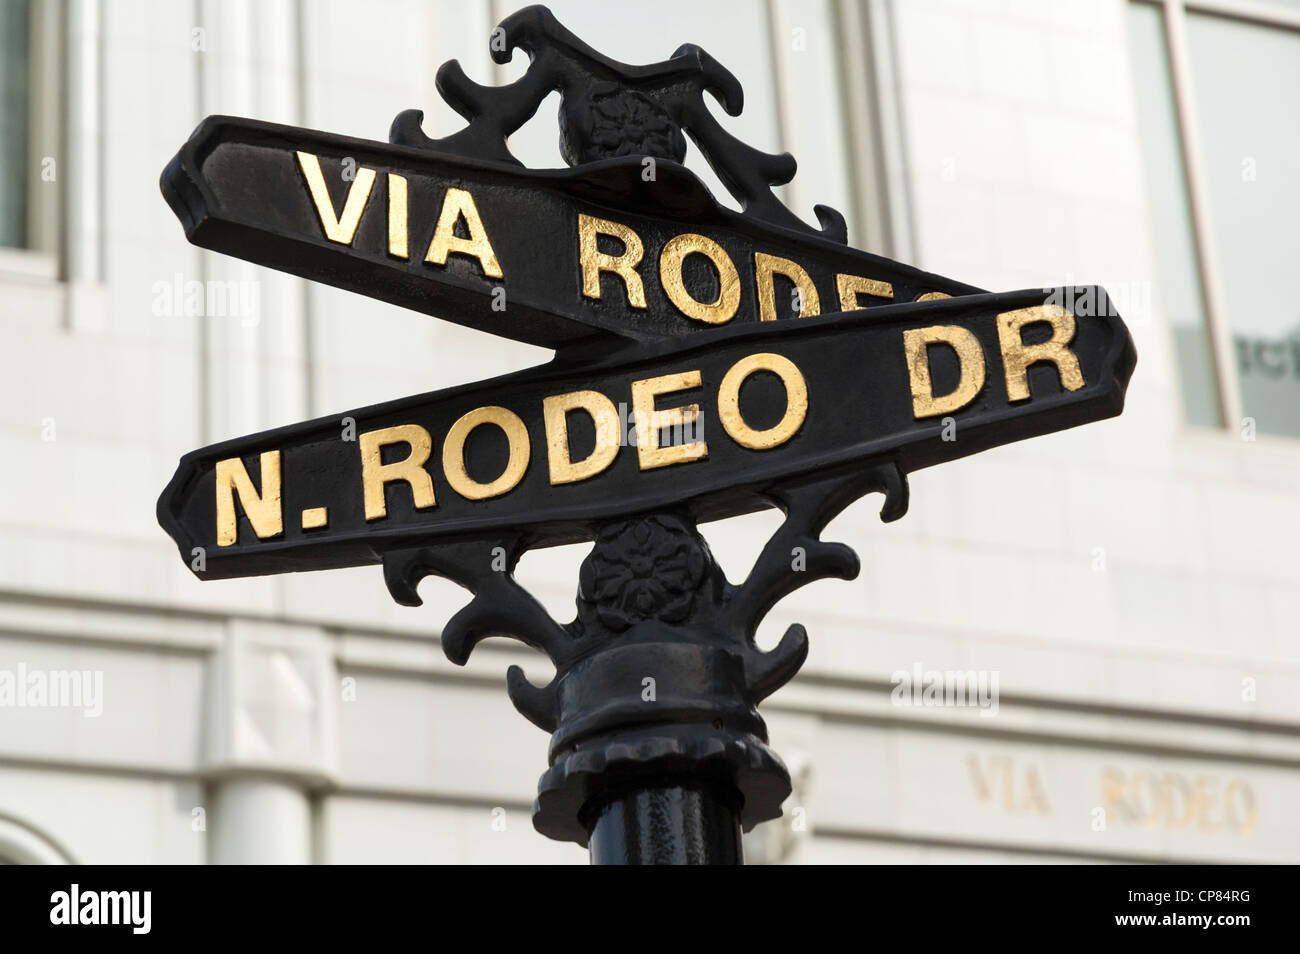 Rodeo Drive, strada segno post, Beverly Hills, Los Angeles, California, Stati Uniti d'America Foto Stock